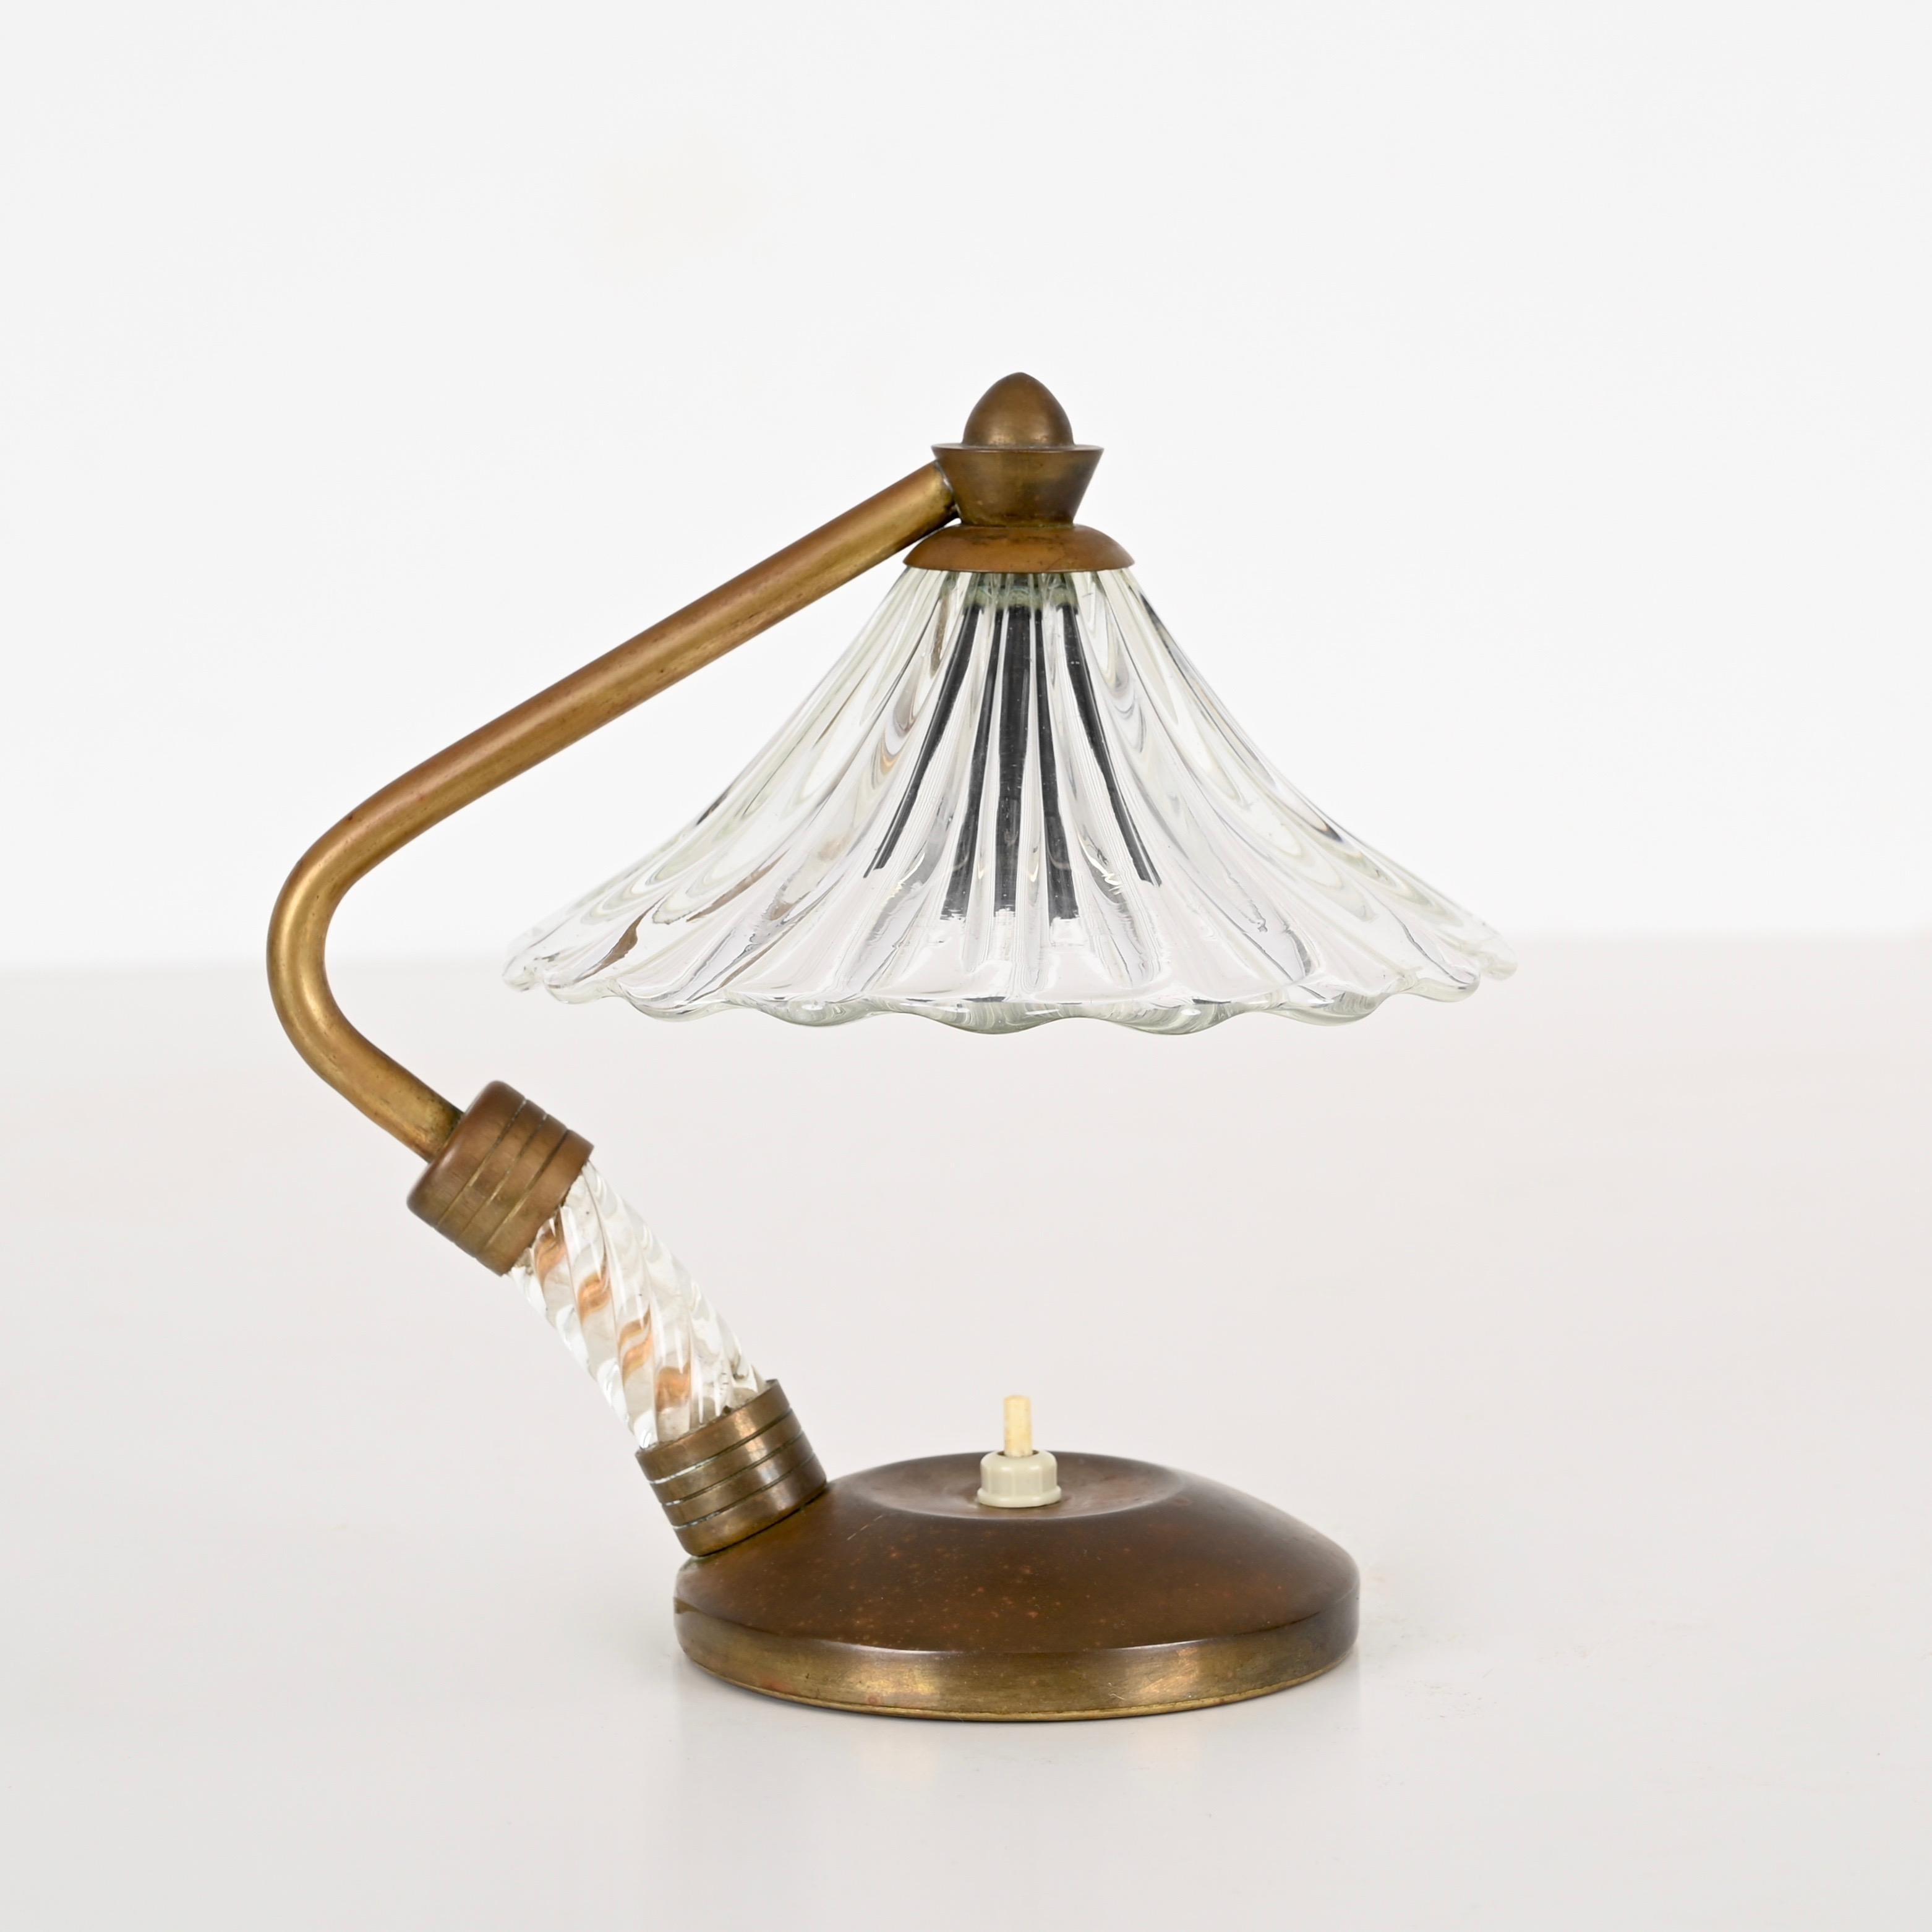 Wunderschöne Tischlampe aus einer Kombination von Murano-Glas und Messing. Diese unglaublich elegante Lampe wurde von Ercole Barovier entworfen und in den frühen 40er Jahren in Italien hergestellt.  

Der Schirm dieser fein gearbeiteten Lampe